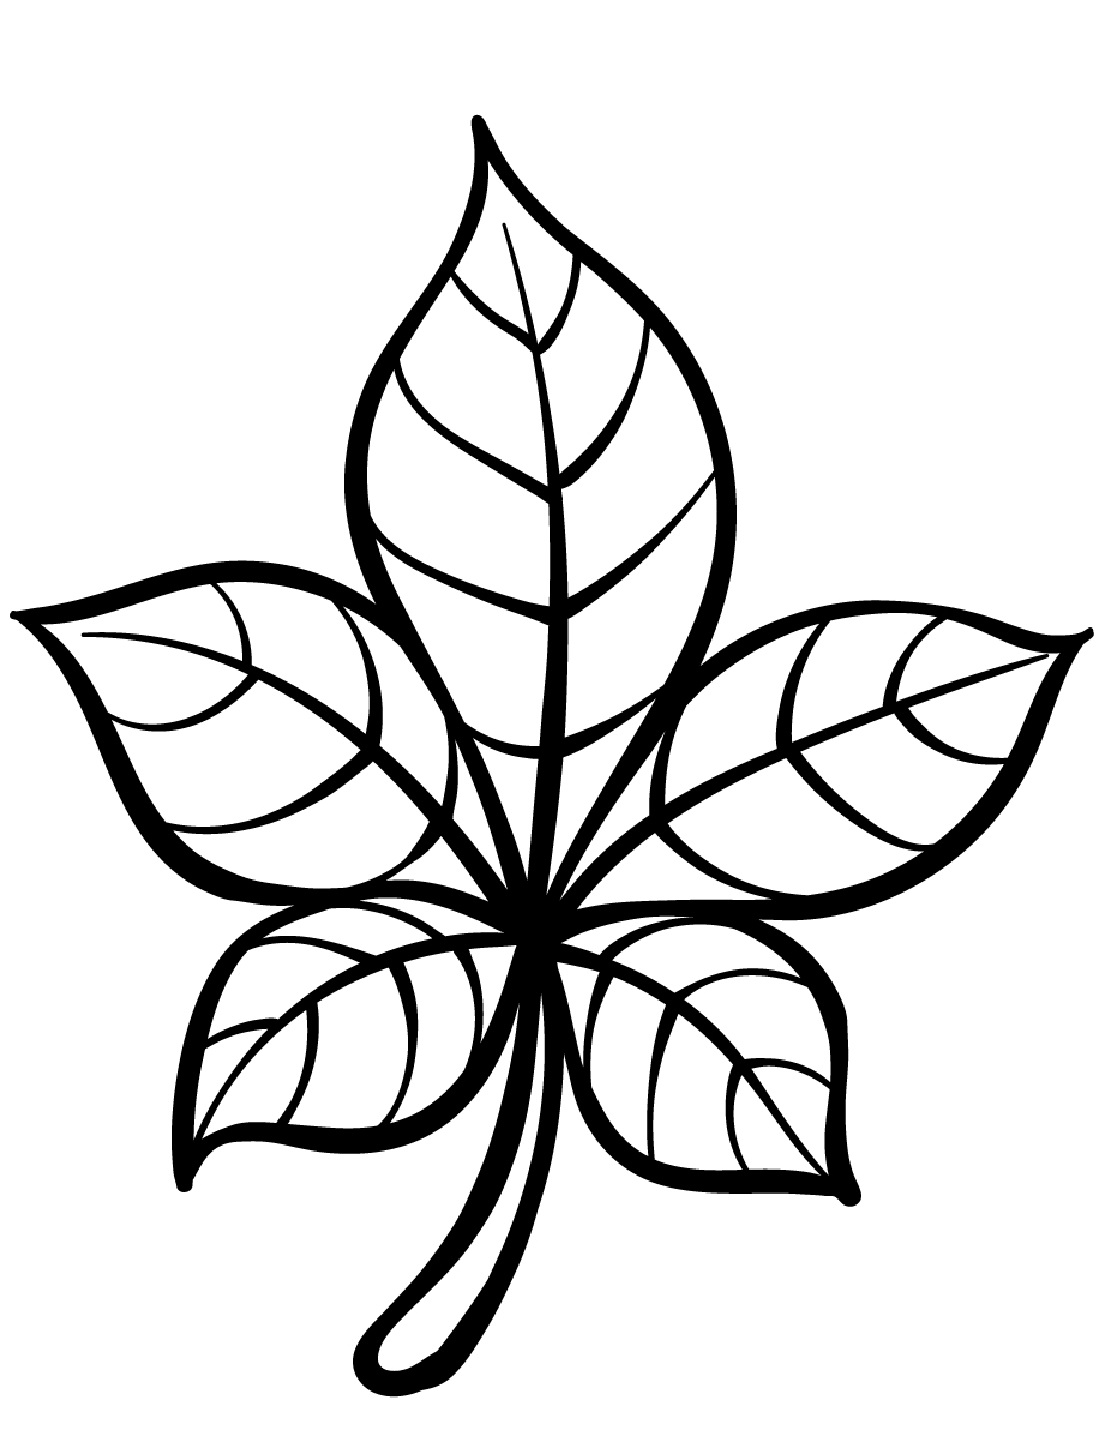 Leaf black and white to color - SheetalColor.com